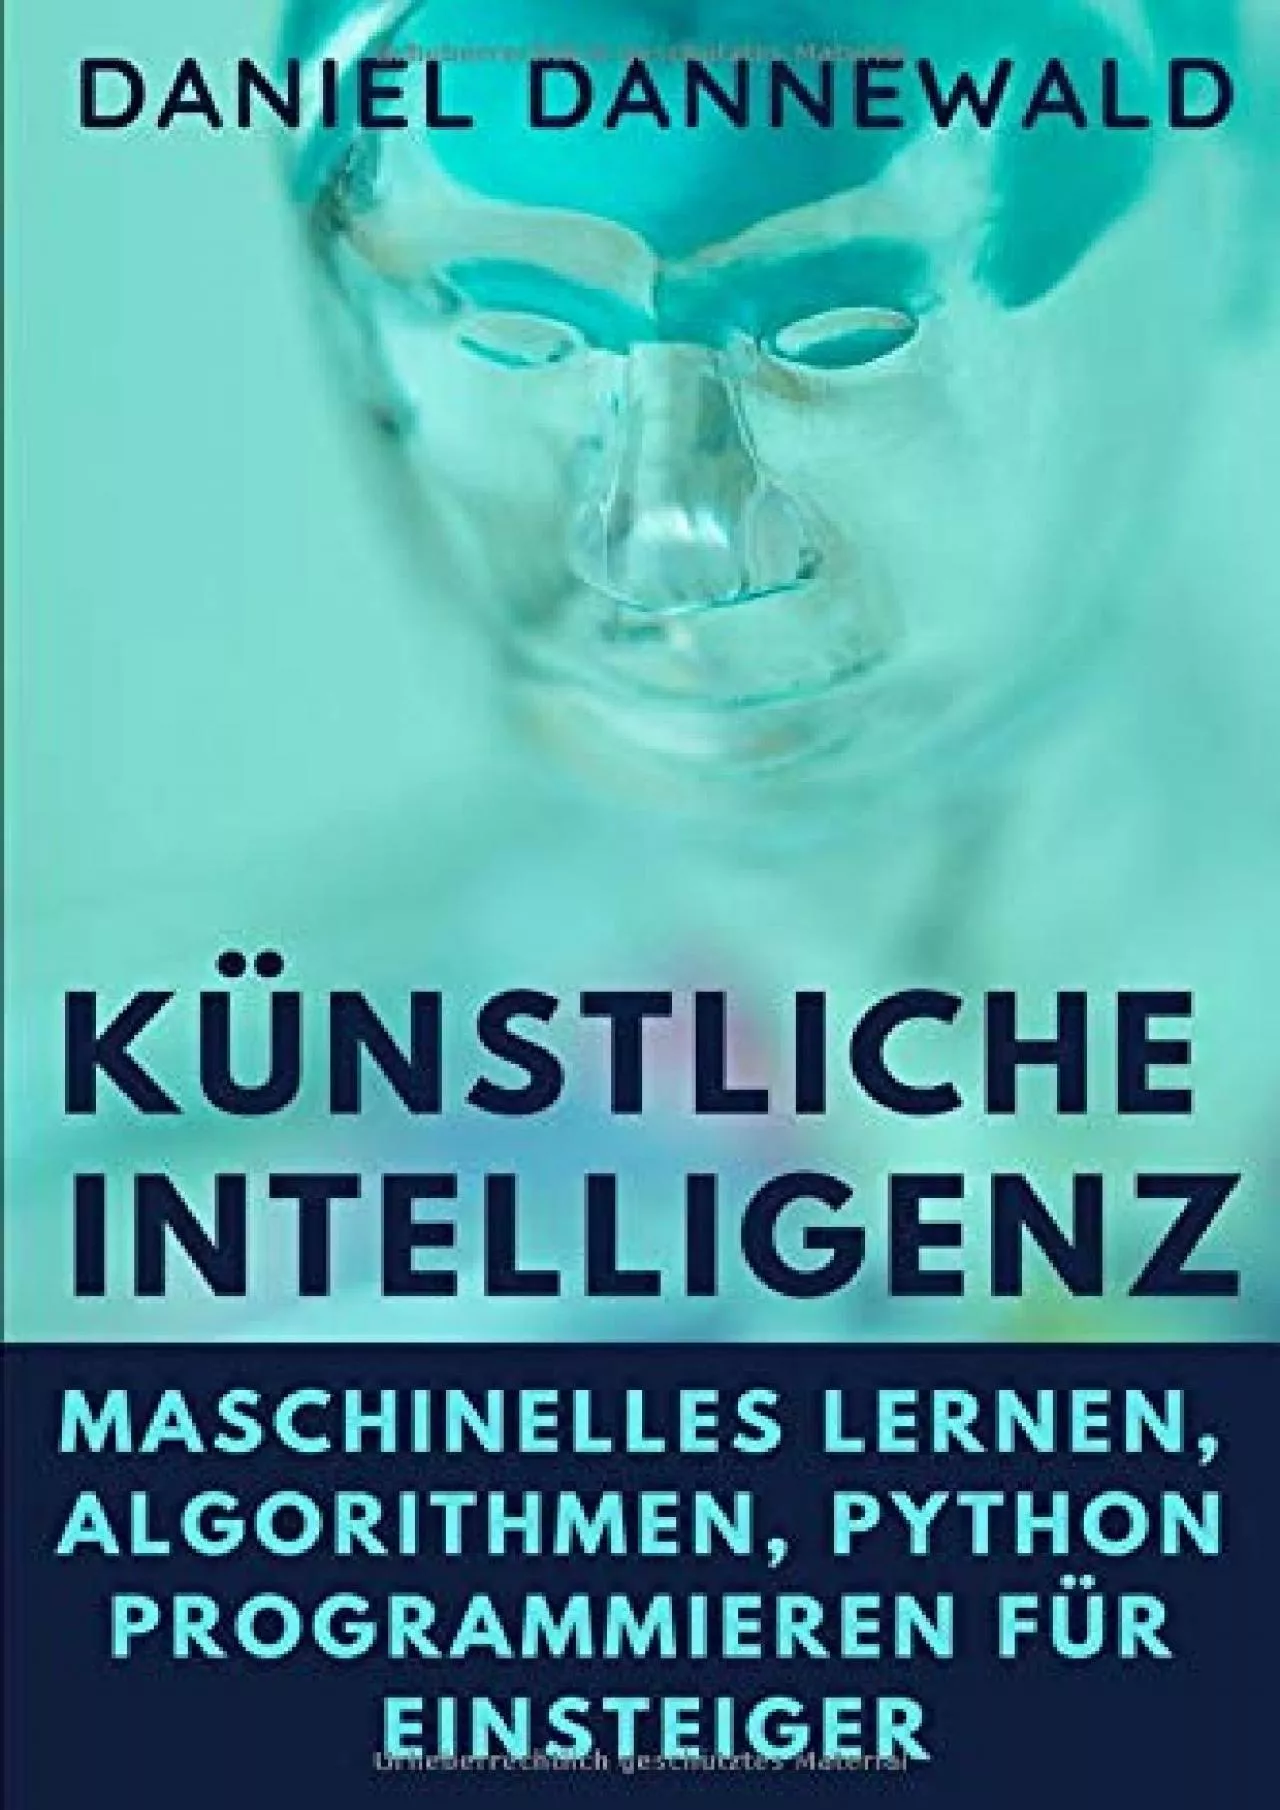 [READING BOOK]-Künstliche Intelligenz: Maschinelles lernen, Algorithmen, Python programmieren